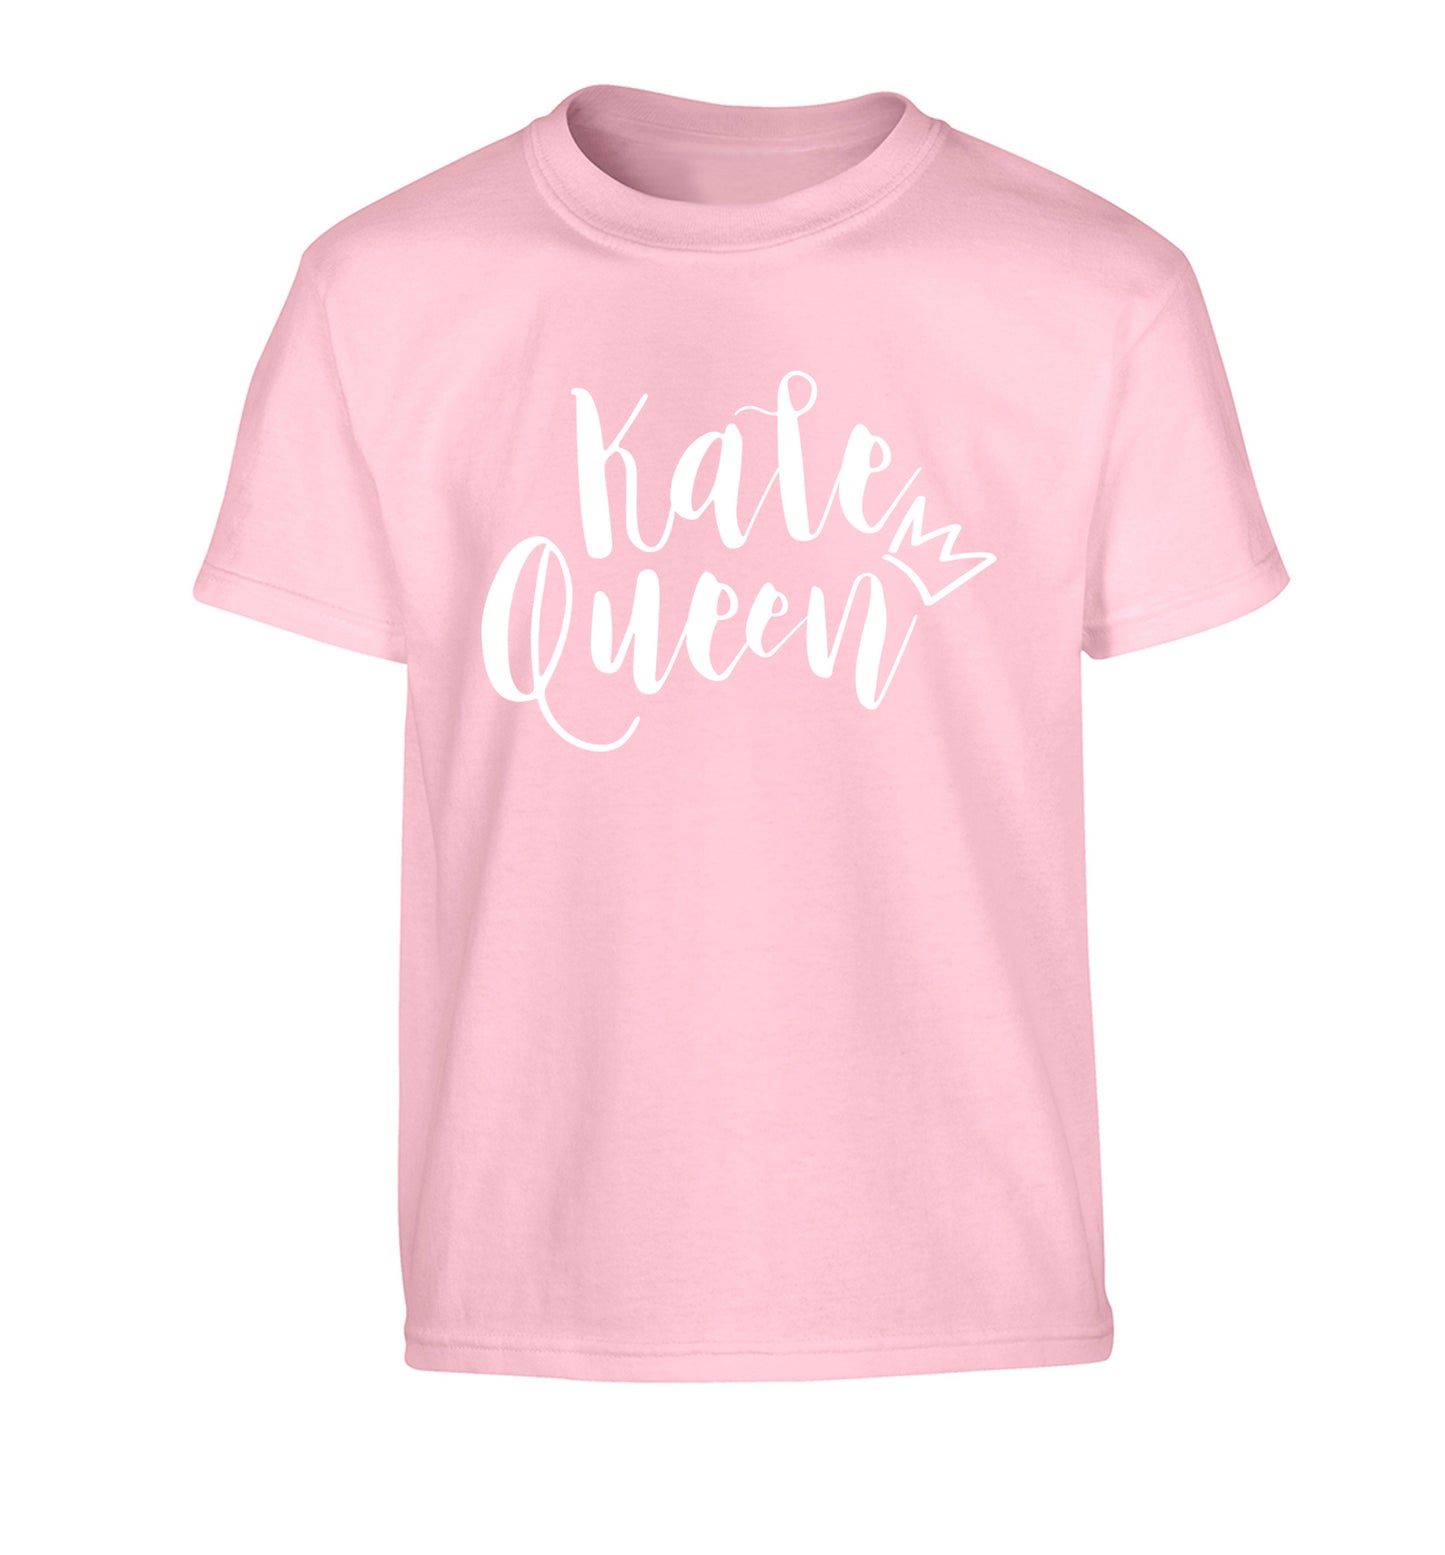 Kale Queen Children's light pink Tshirt 12-14 Years